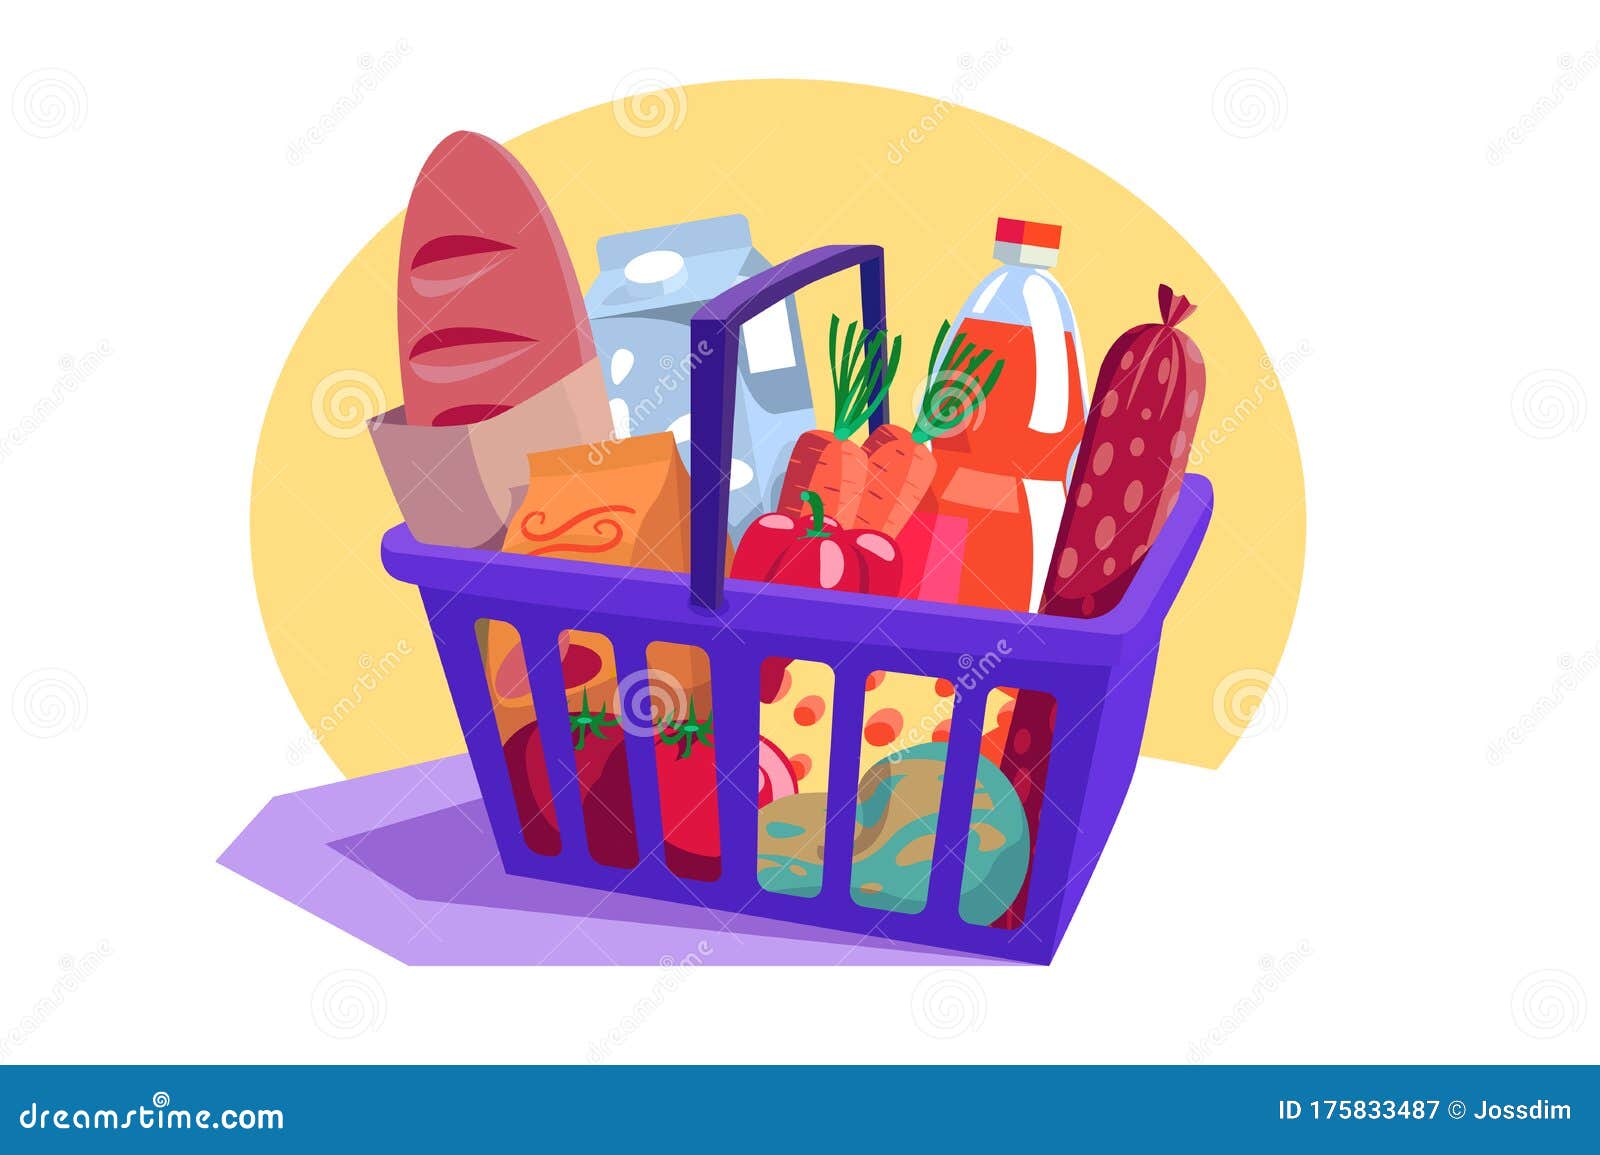 shopping basket full of fresh groceries